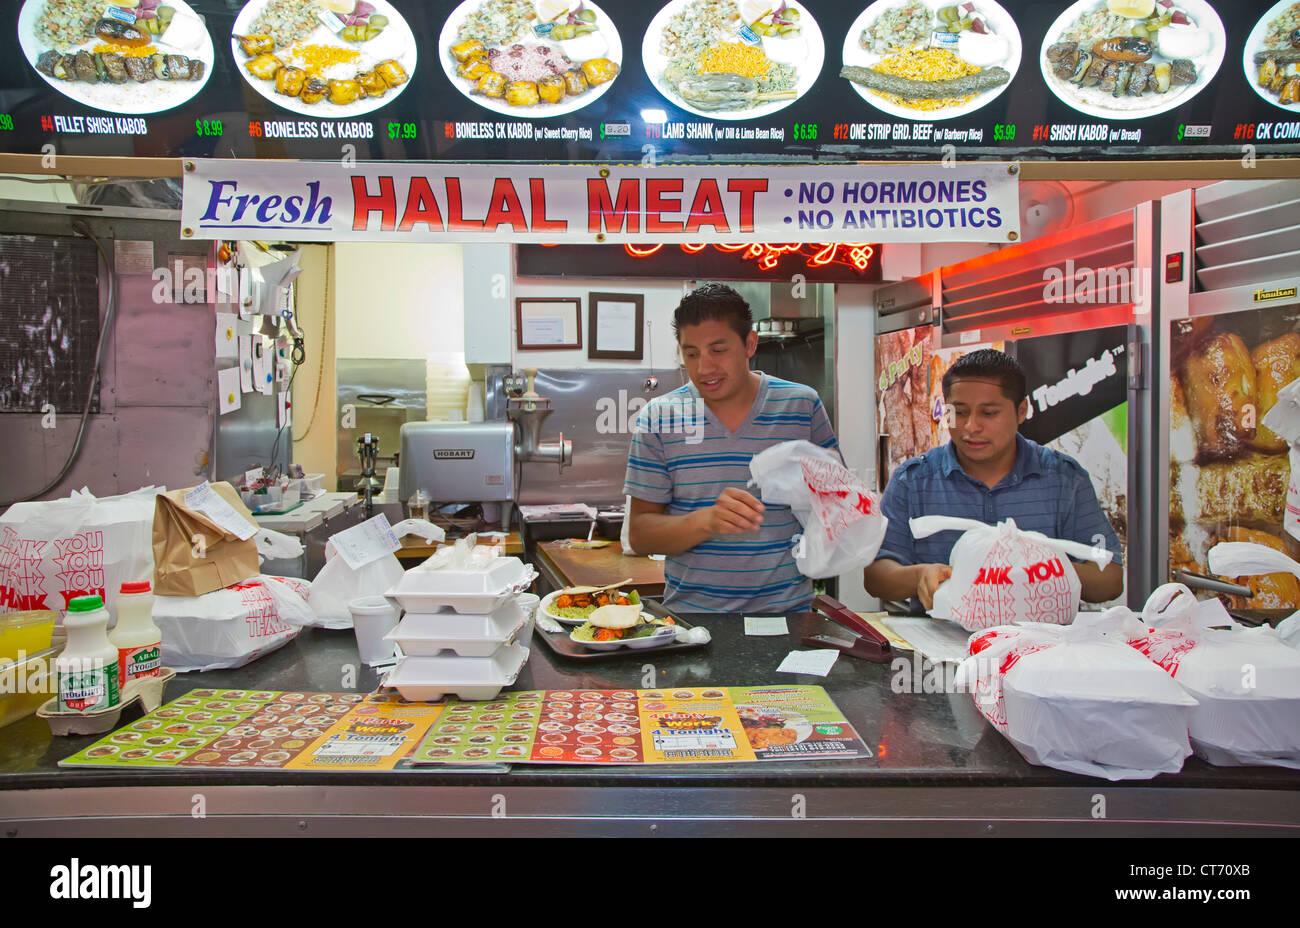 Los Angeles, Kalifornien - Arbeiter Kochen zum Mitnehmen bei einem Imbiss-Stand, die Halal-Fleisch in Los Angeles Modeviertel verkauft. Stockfoto